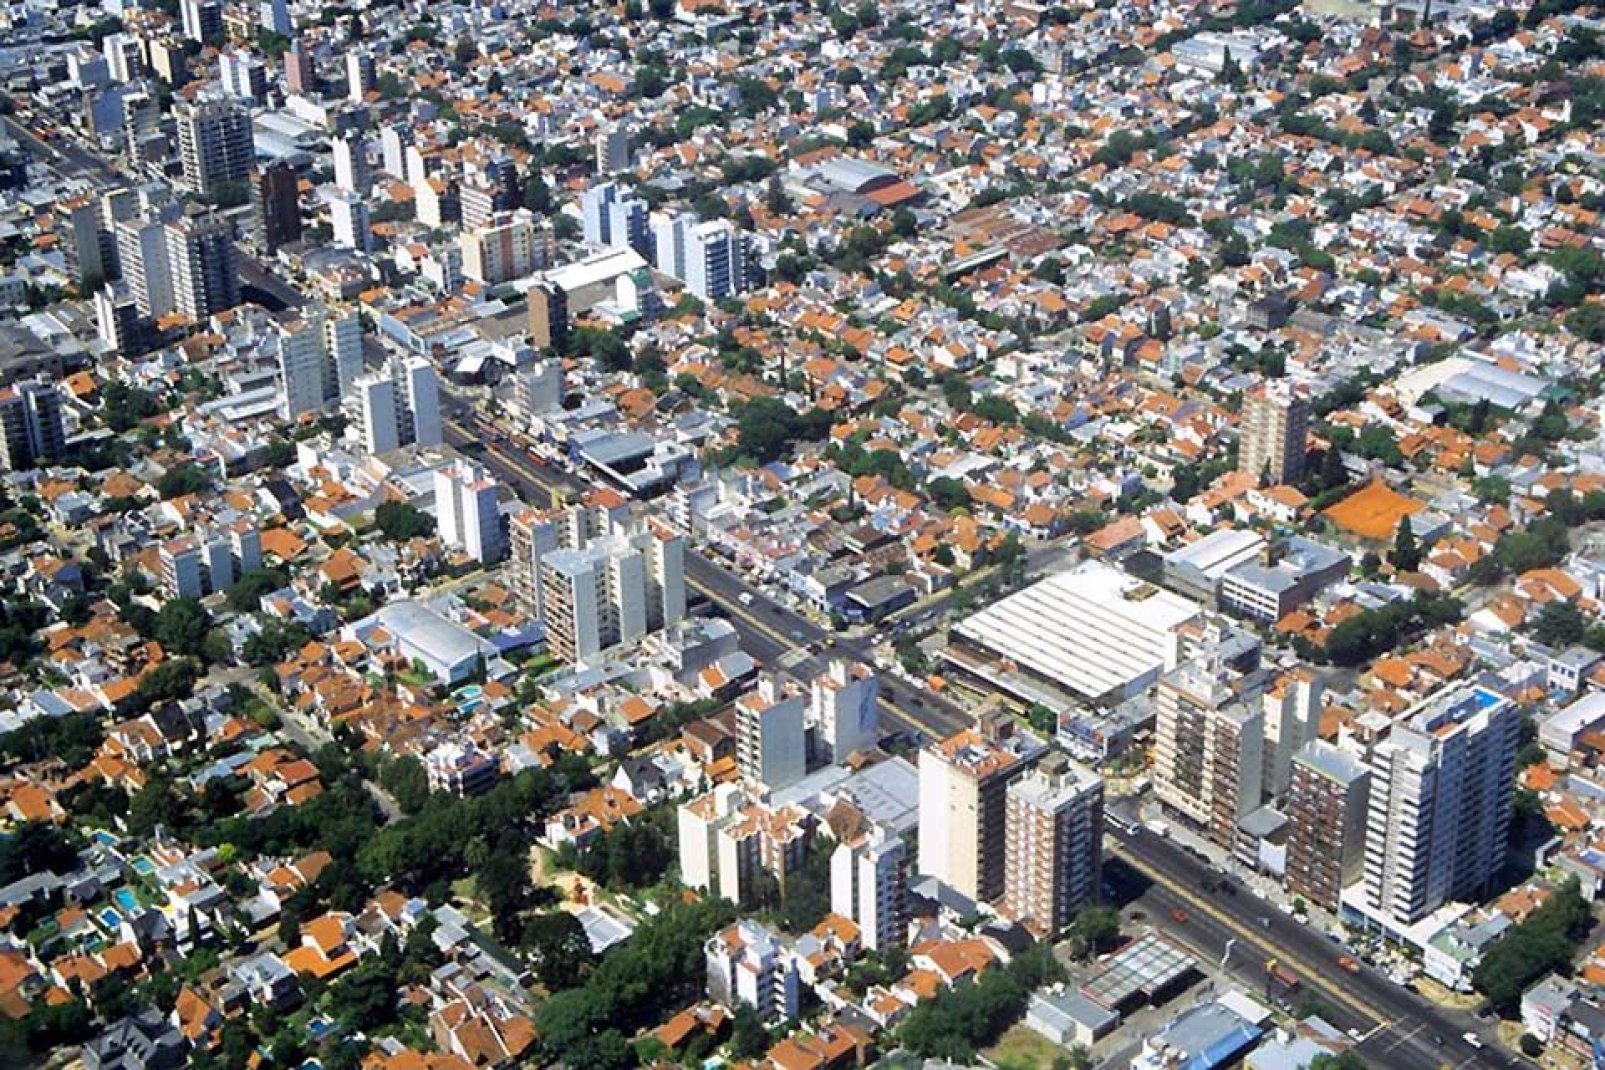 Buenos Aires è una delle grandi metropoli sudamericane, nonché sede di uno dei maggiori porti del continente.